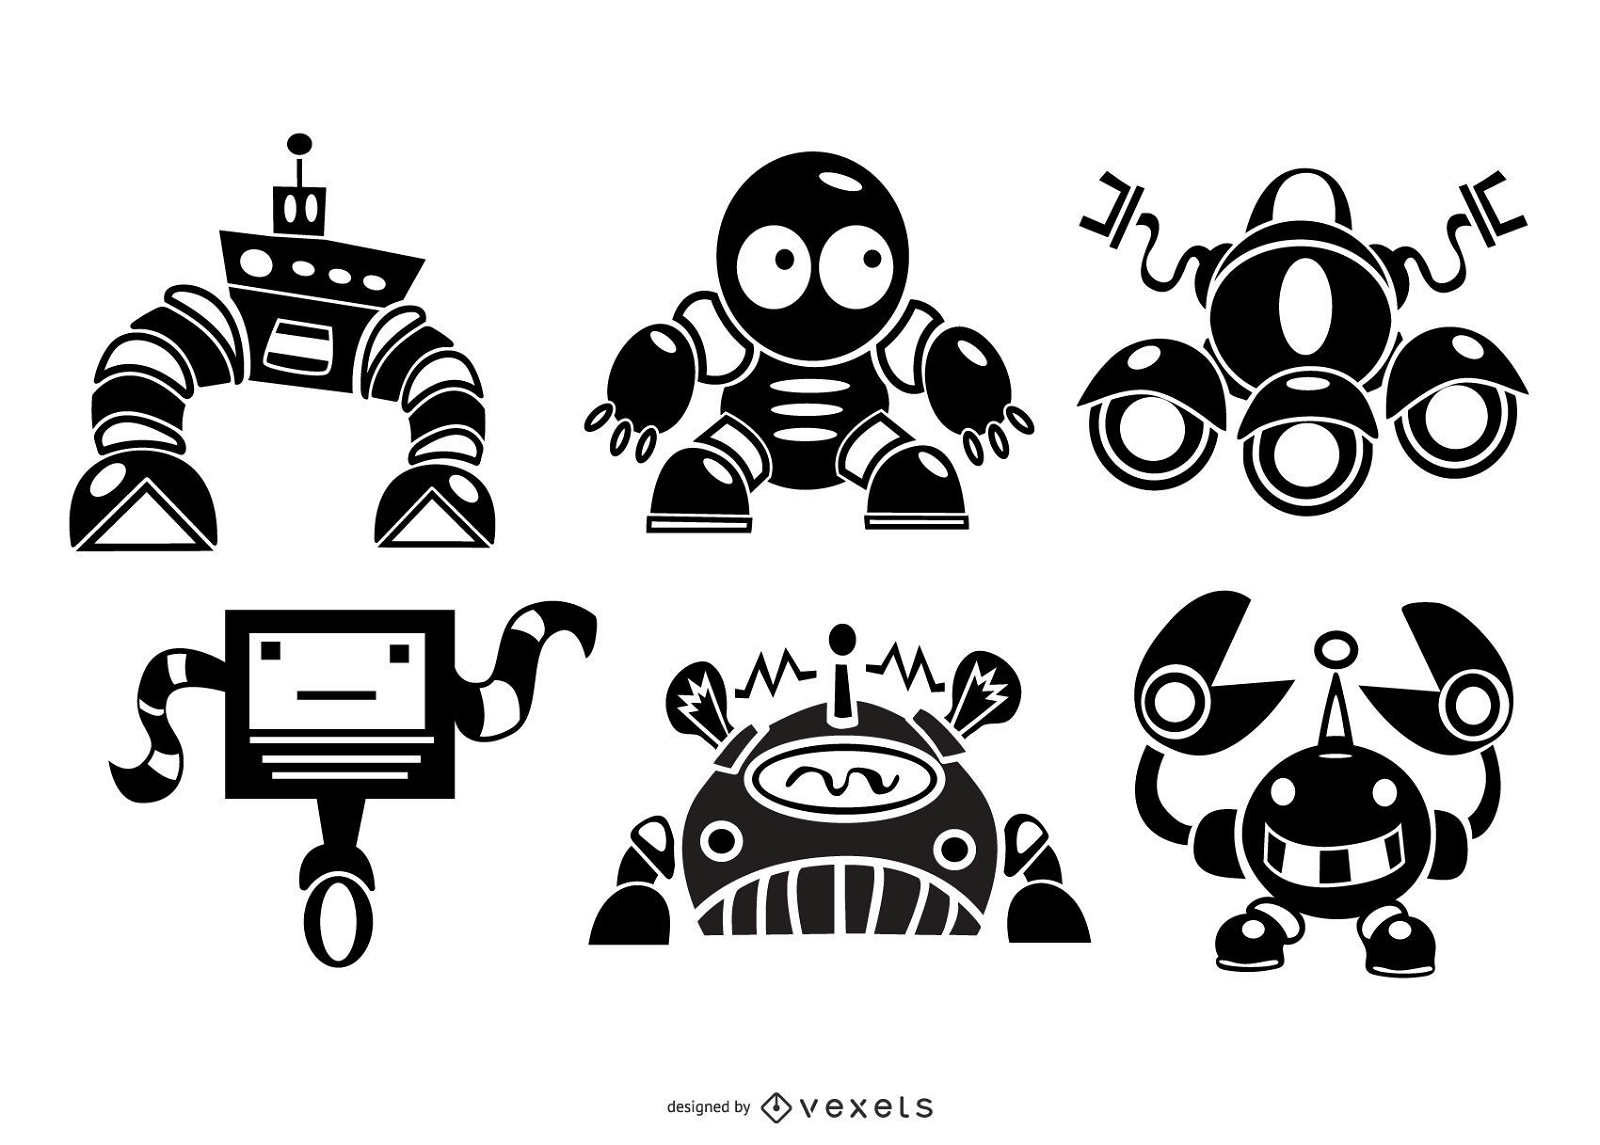 Cute robots silhouette set